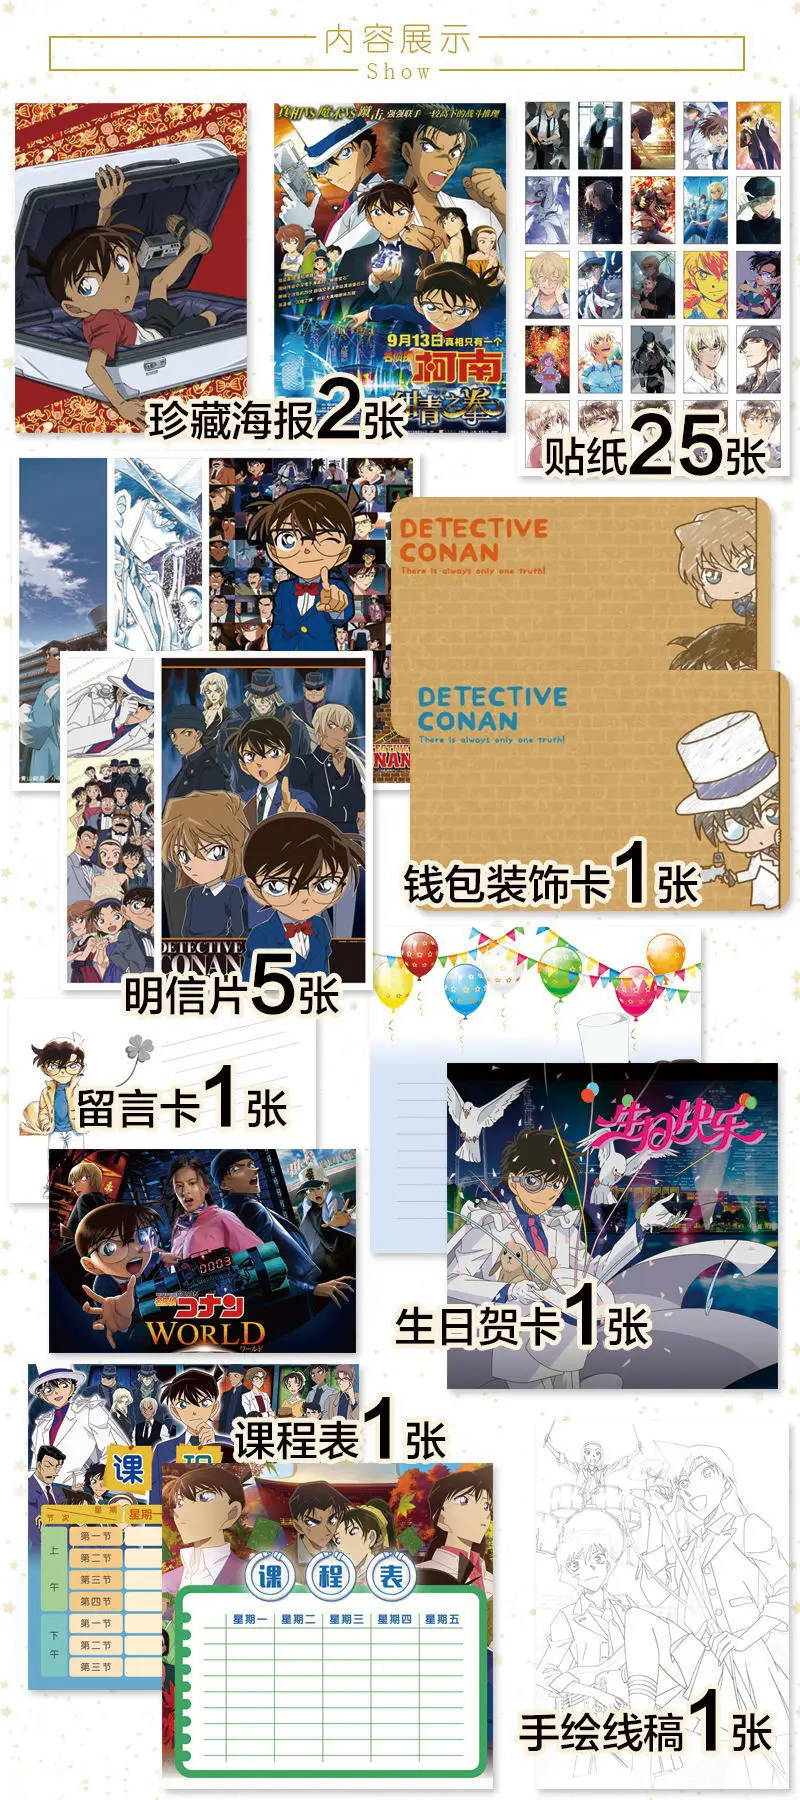 Anime detective conan srečo, darilne vrečke za zbiranje igrač vključujejo dopisnica plakat značko nalepke zaznamek rokavi darilo